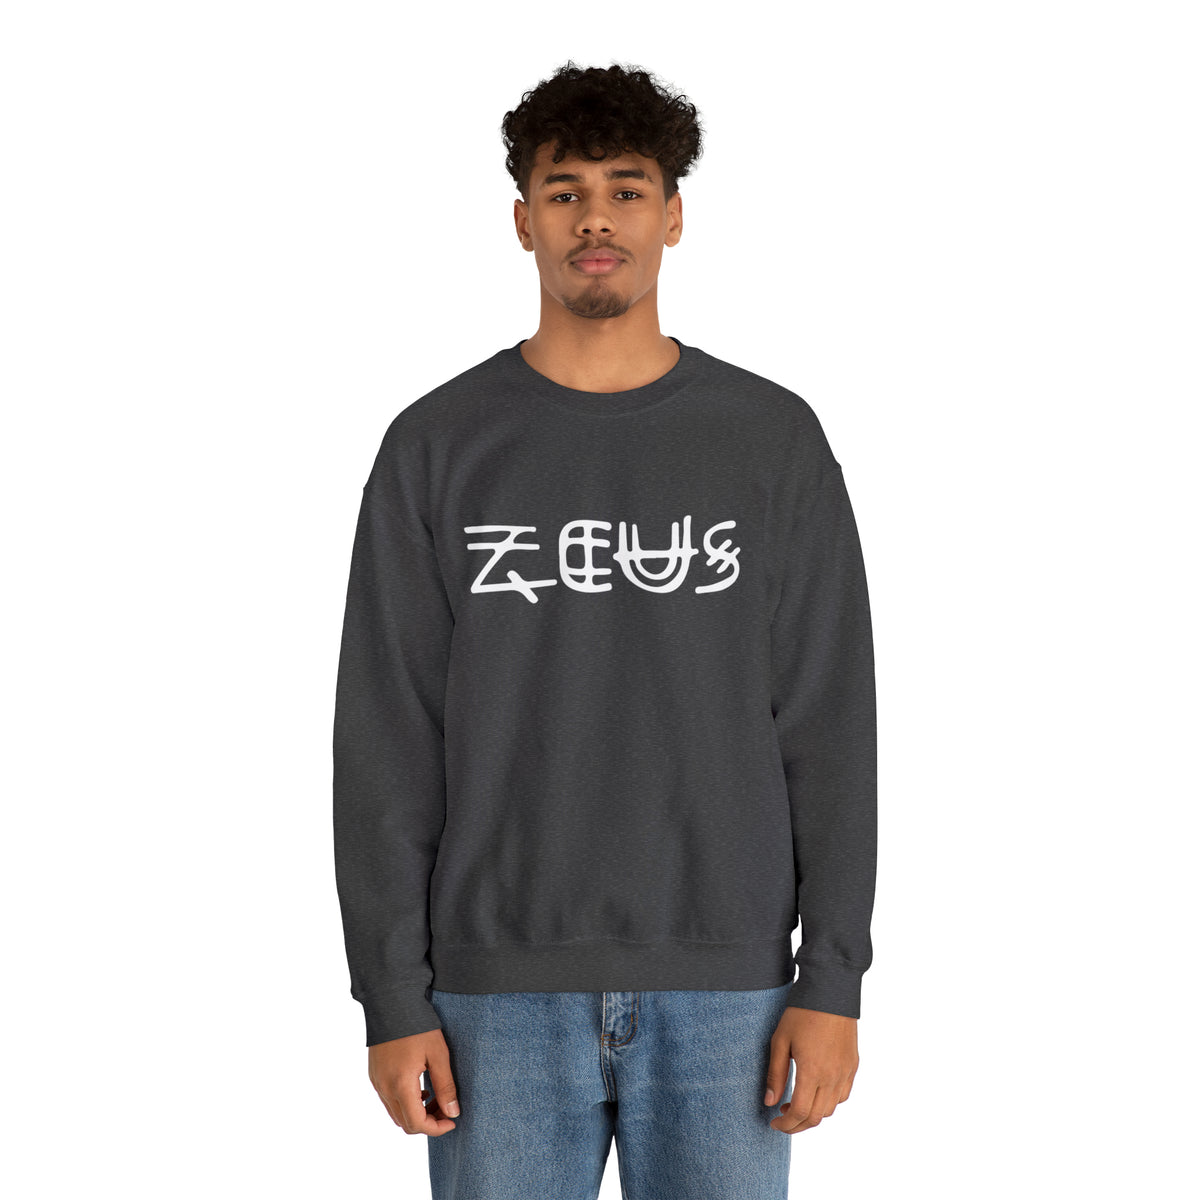 Zeus Unisex Sweatshirt